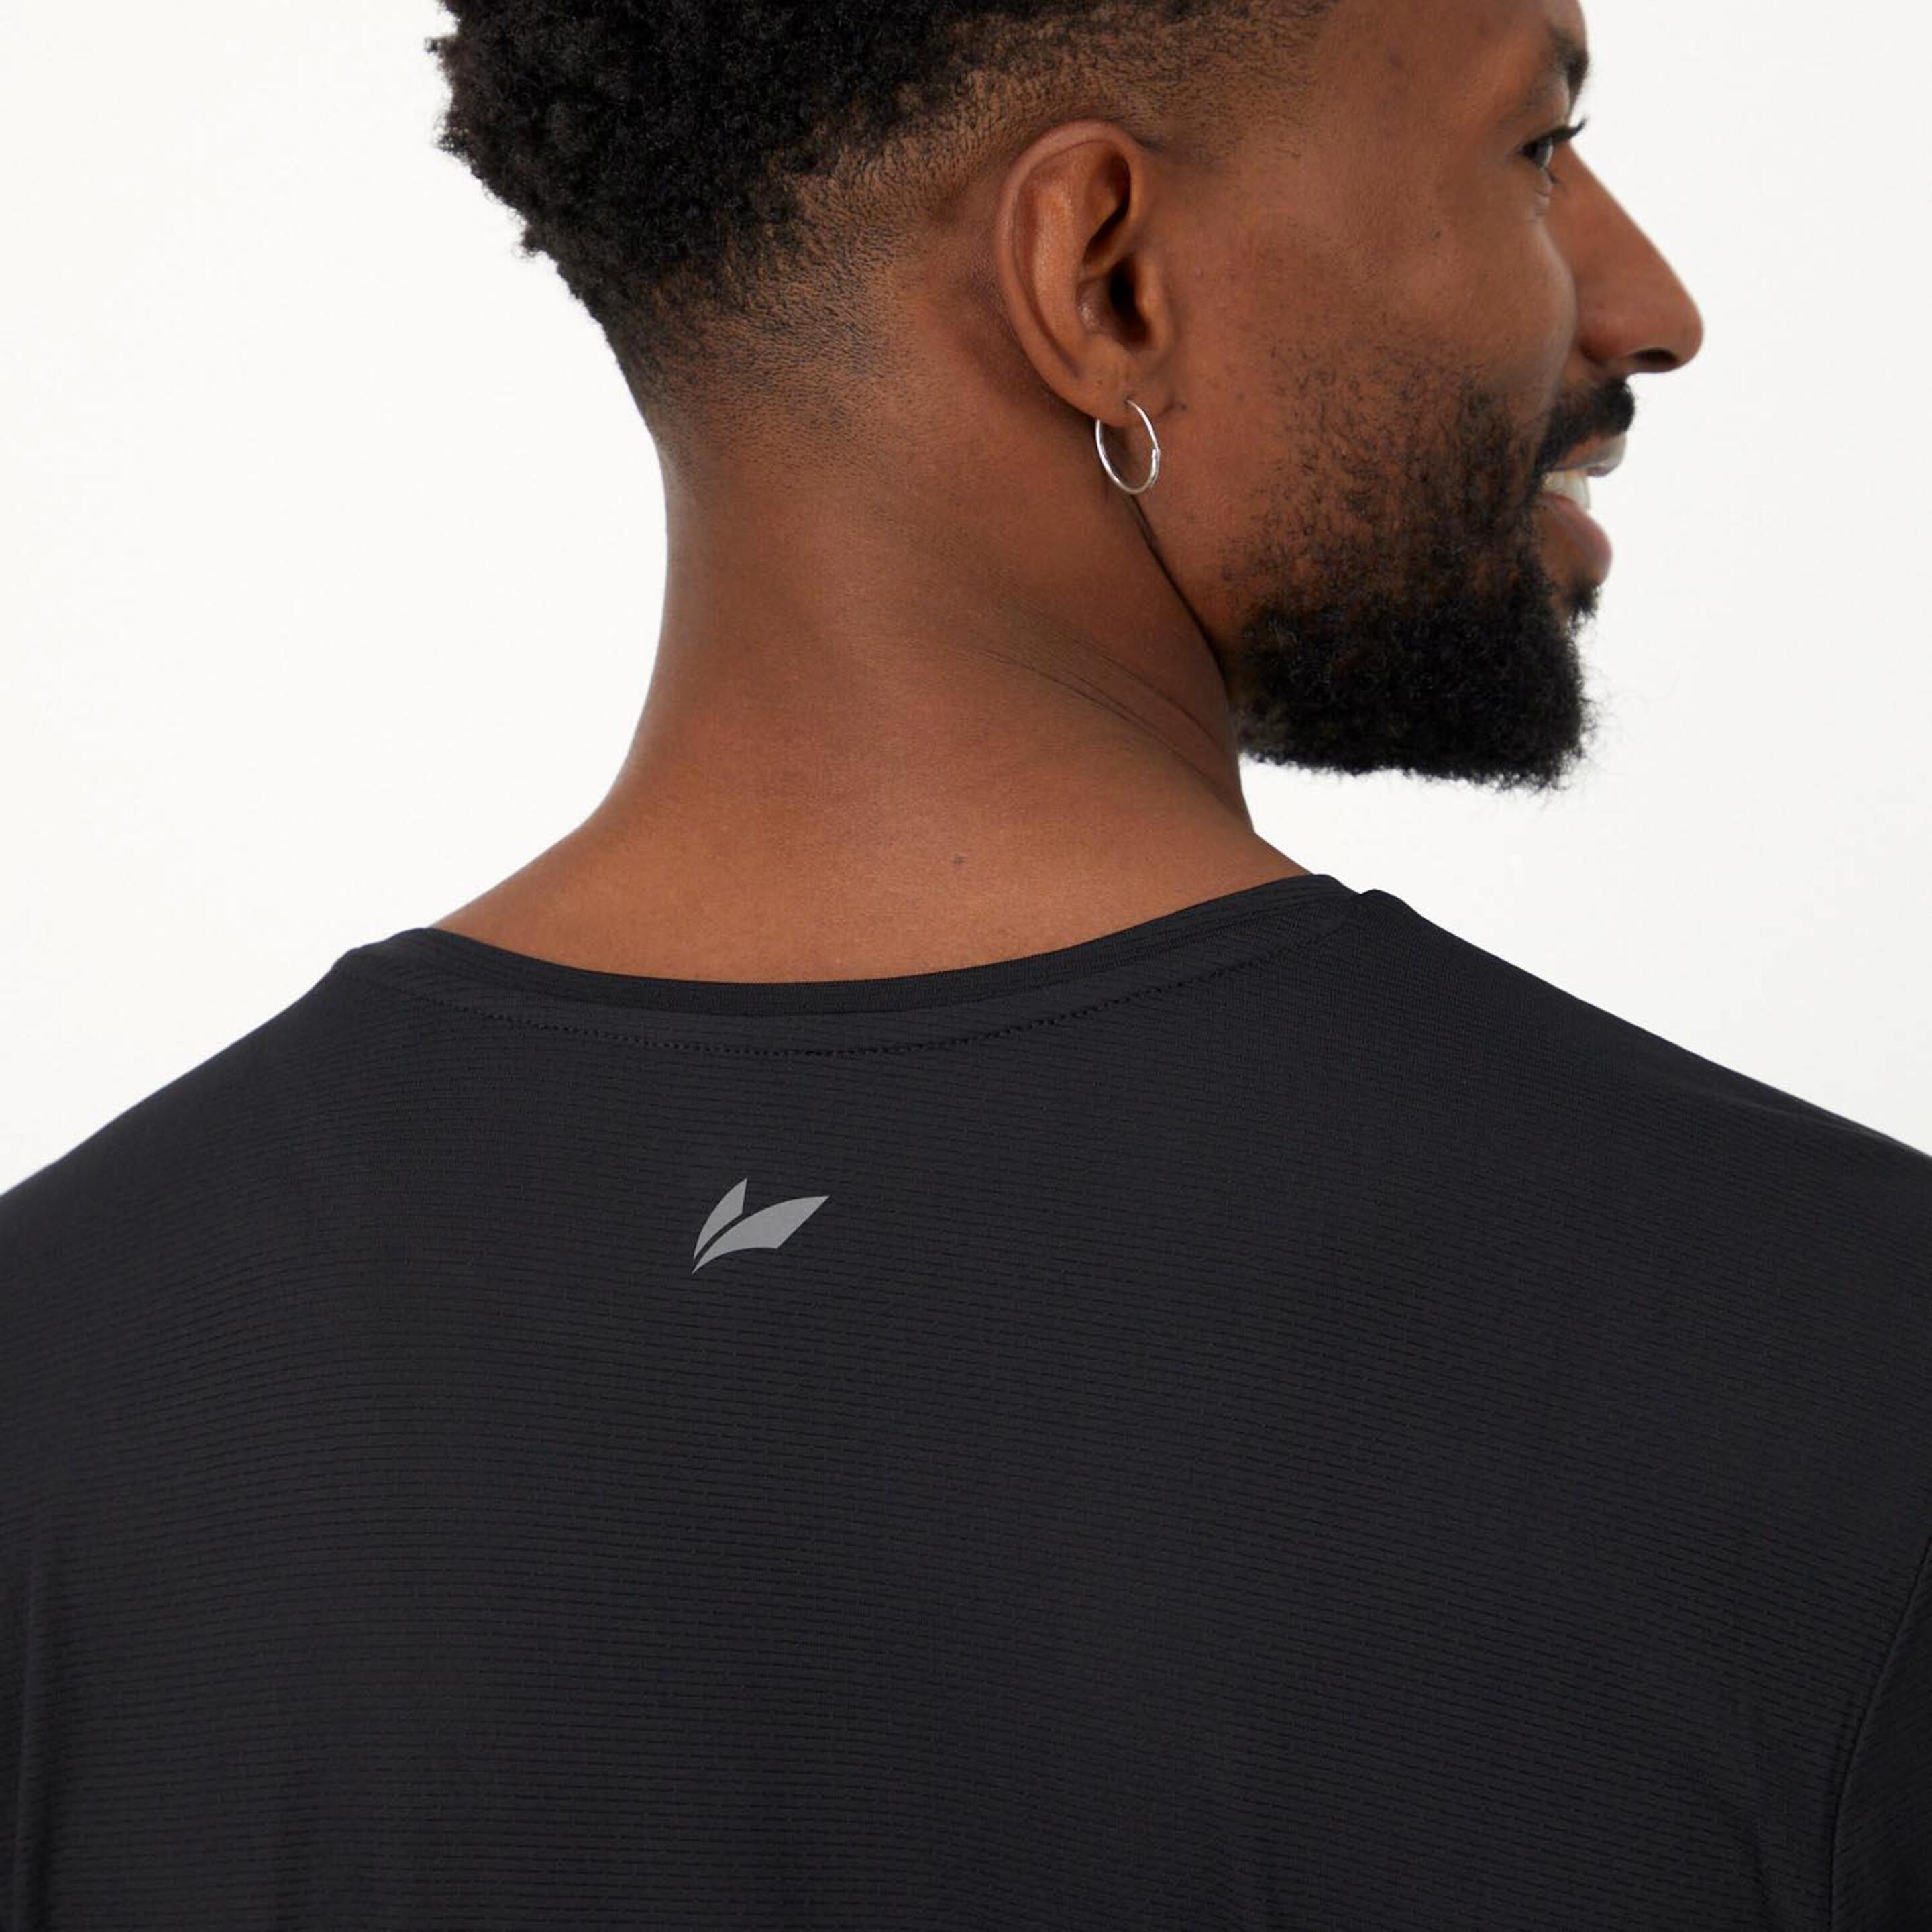 Ipso Basic - Negro - Camiseta Running Hombre